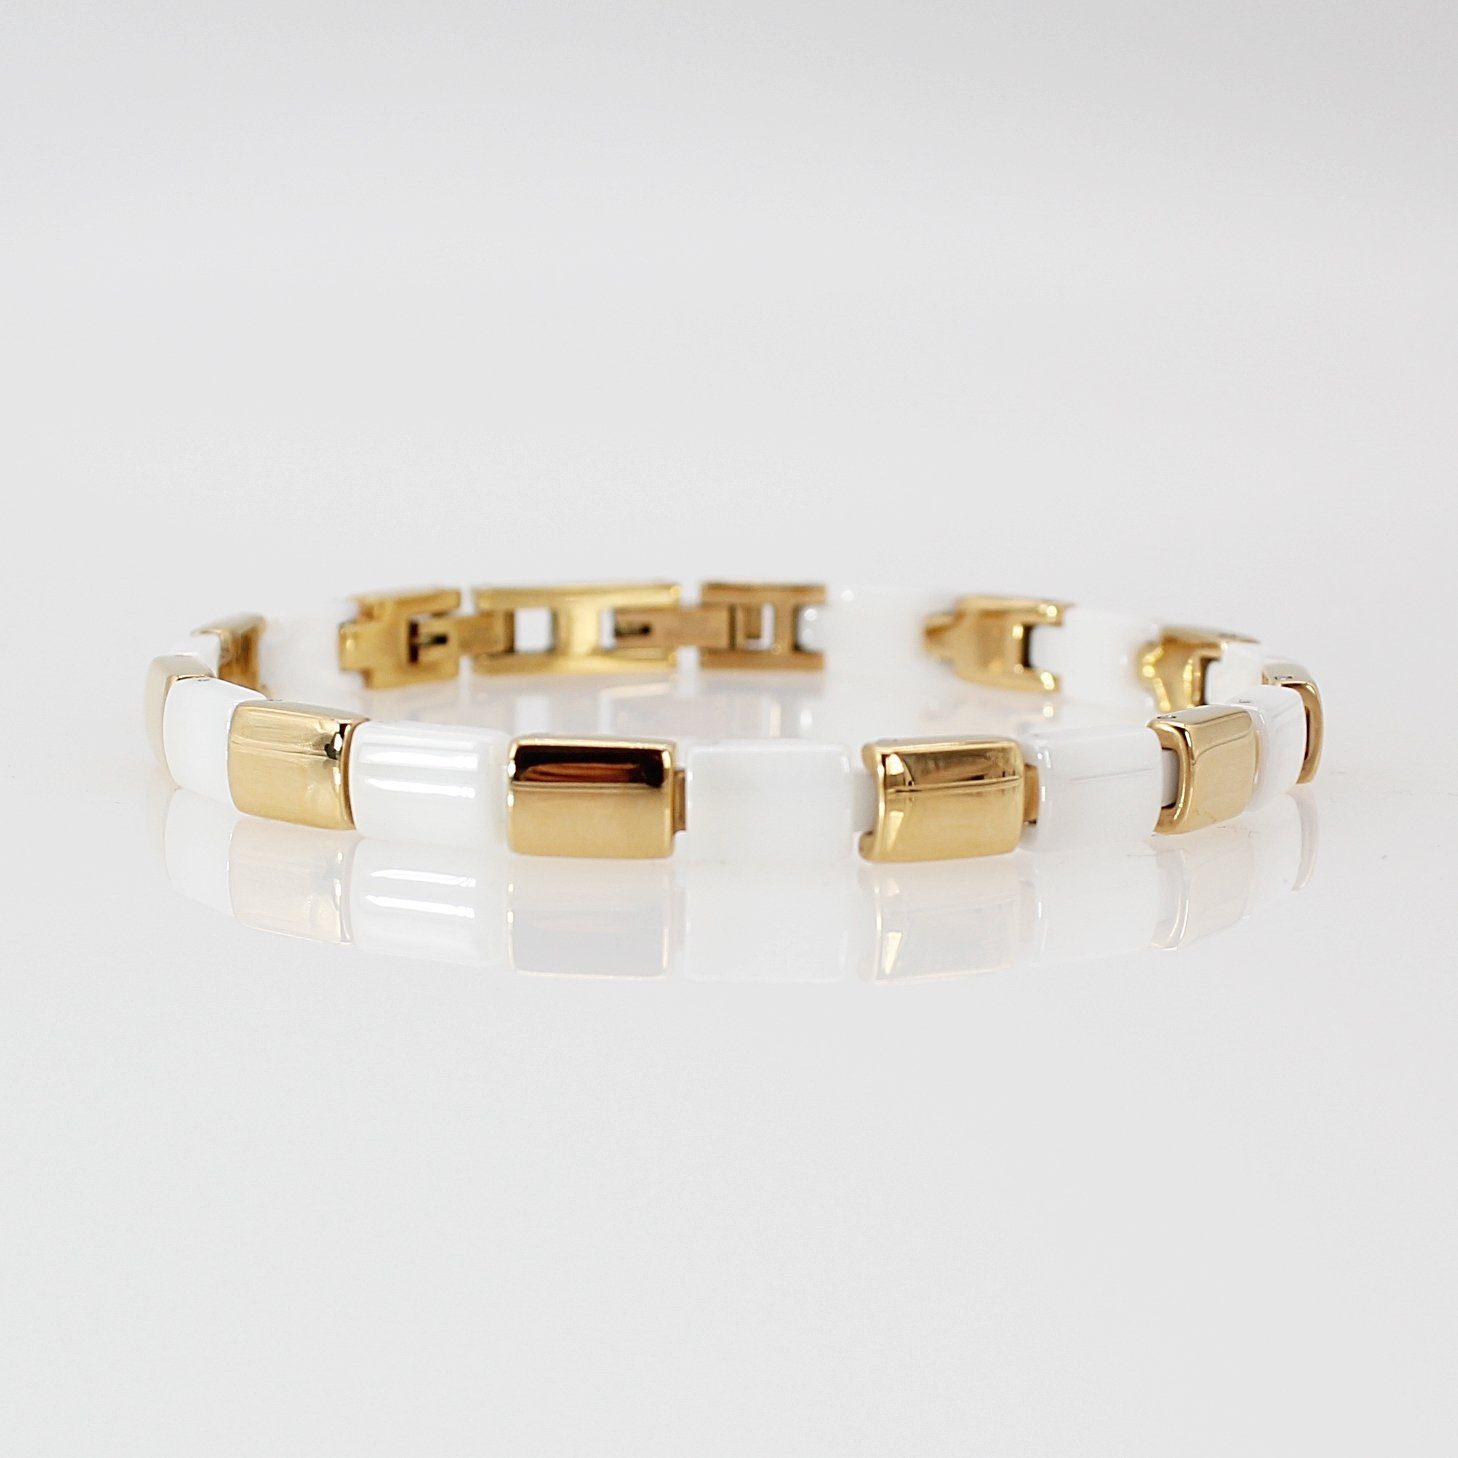 Gold Edelstahlarmband und inklusive ELLAWIL Geschenkschachtel Weiß, cm), Gliederarmband Edelstahl aus (Armbandlänge 19 Keramik Armband